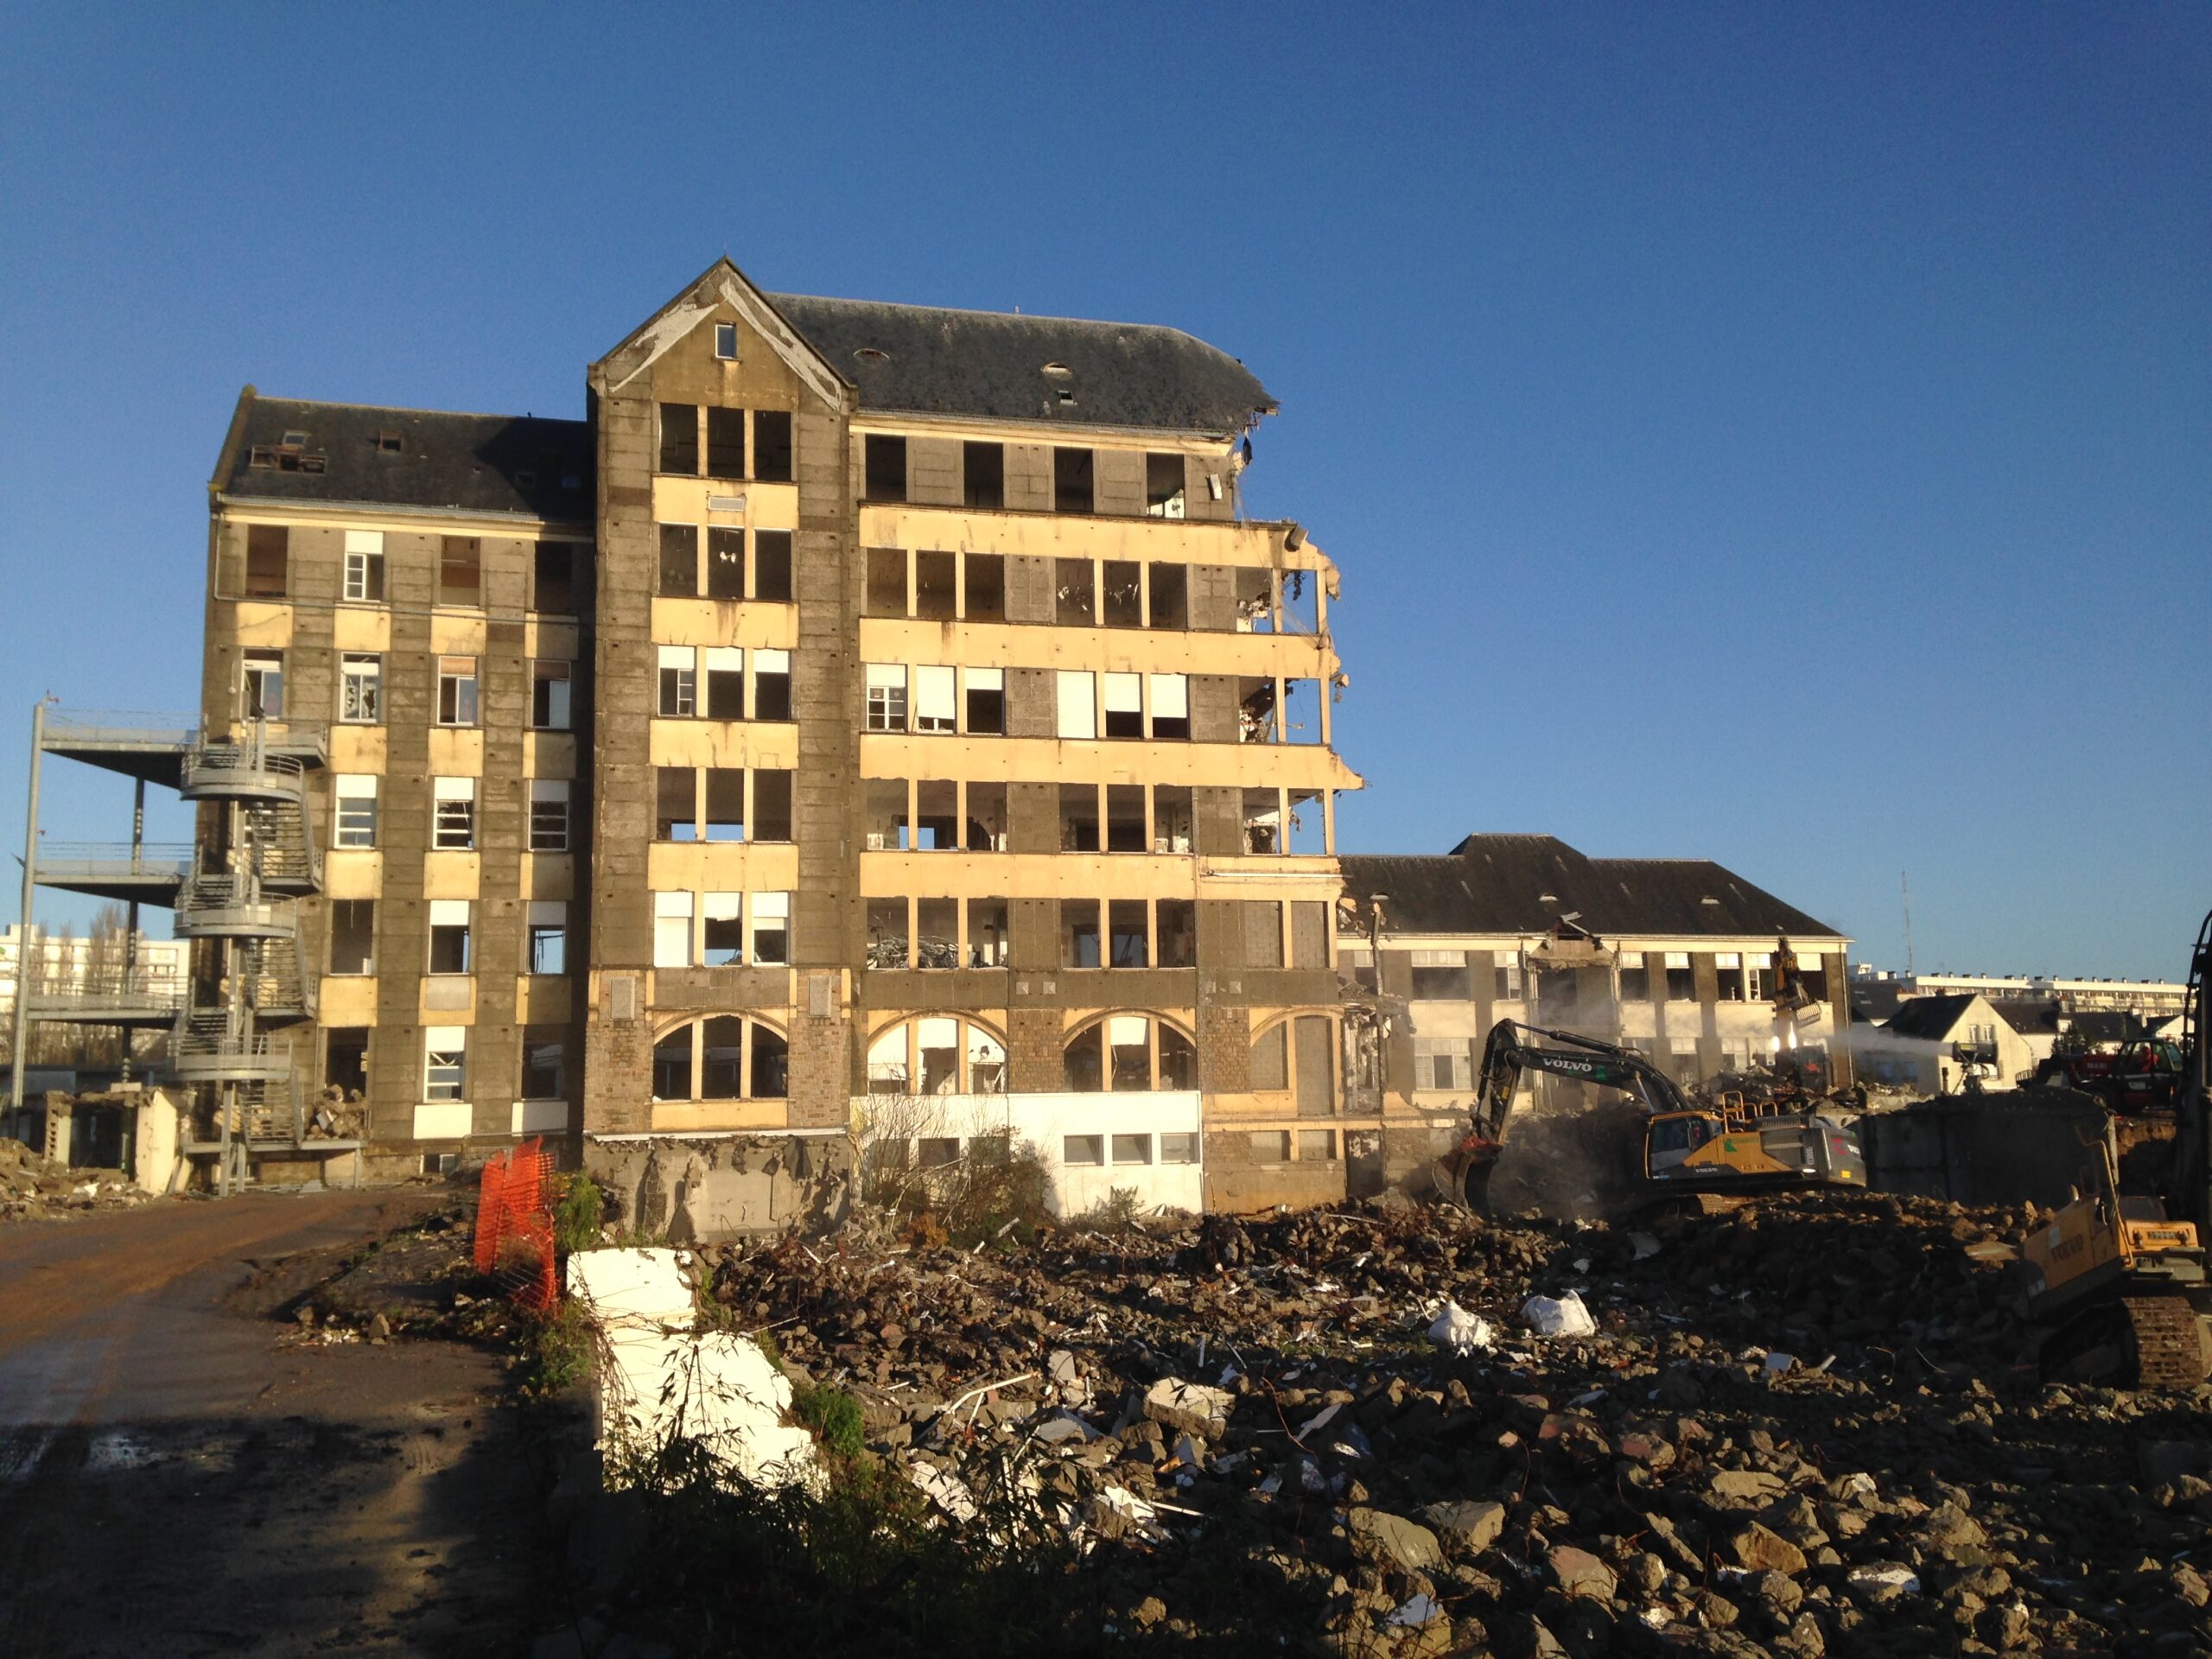 Hôpitaux à déconstruire et dépolluer : l’EPF sollicité